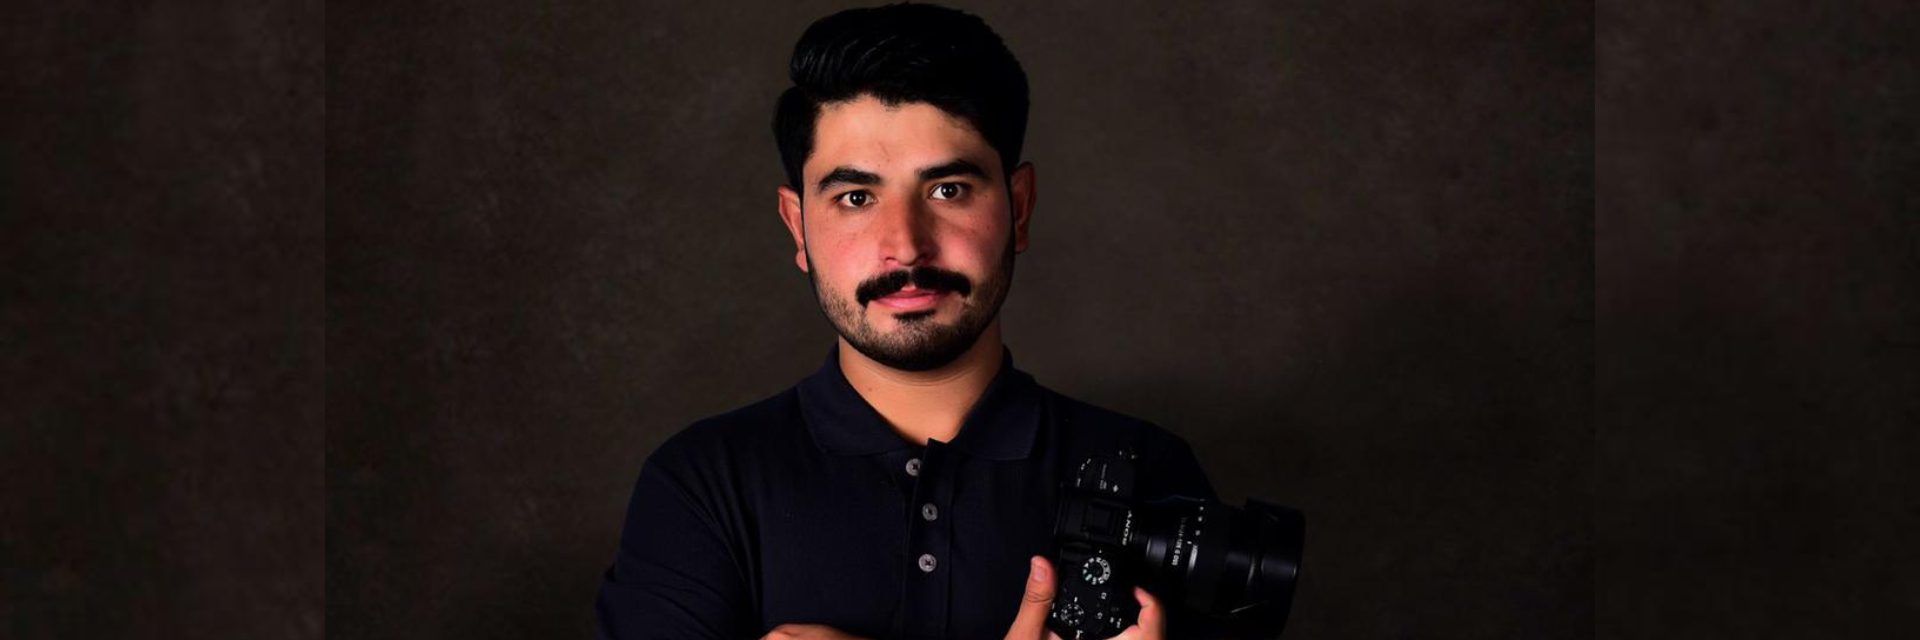 المصور عمر خان ، الذي يحب تصوير الحياة ، يحالفه الحظ في هروبه من أفغانستان